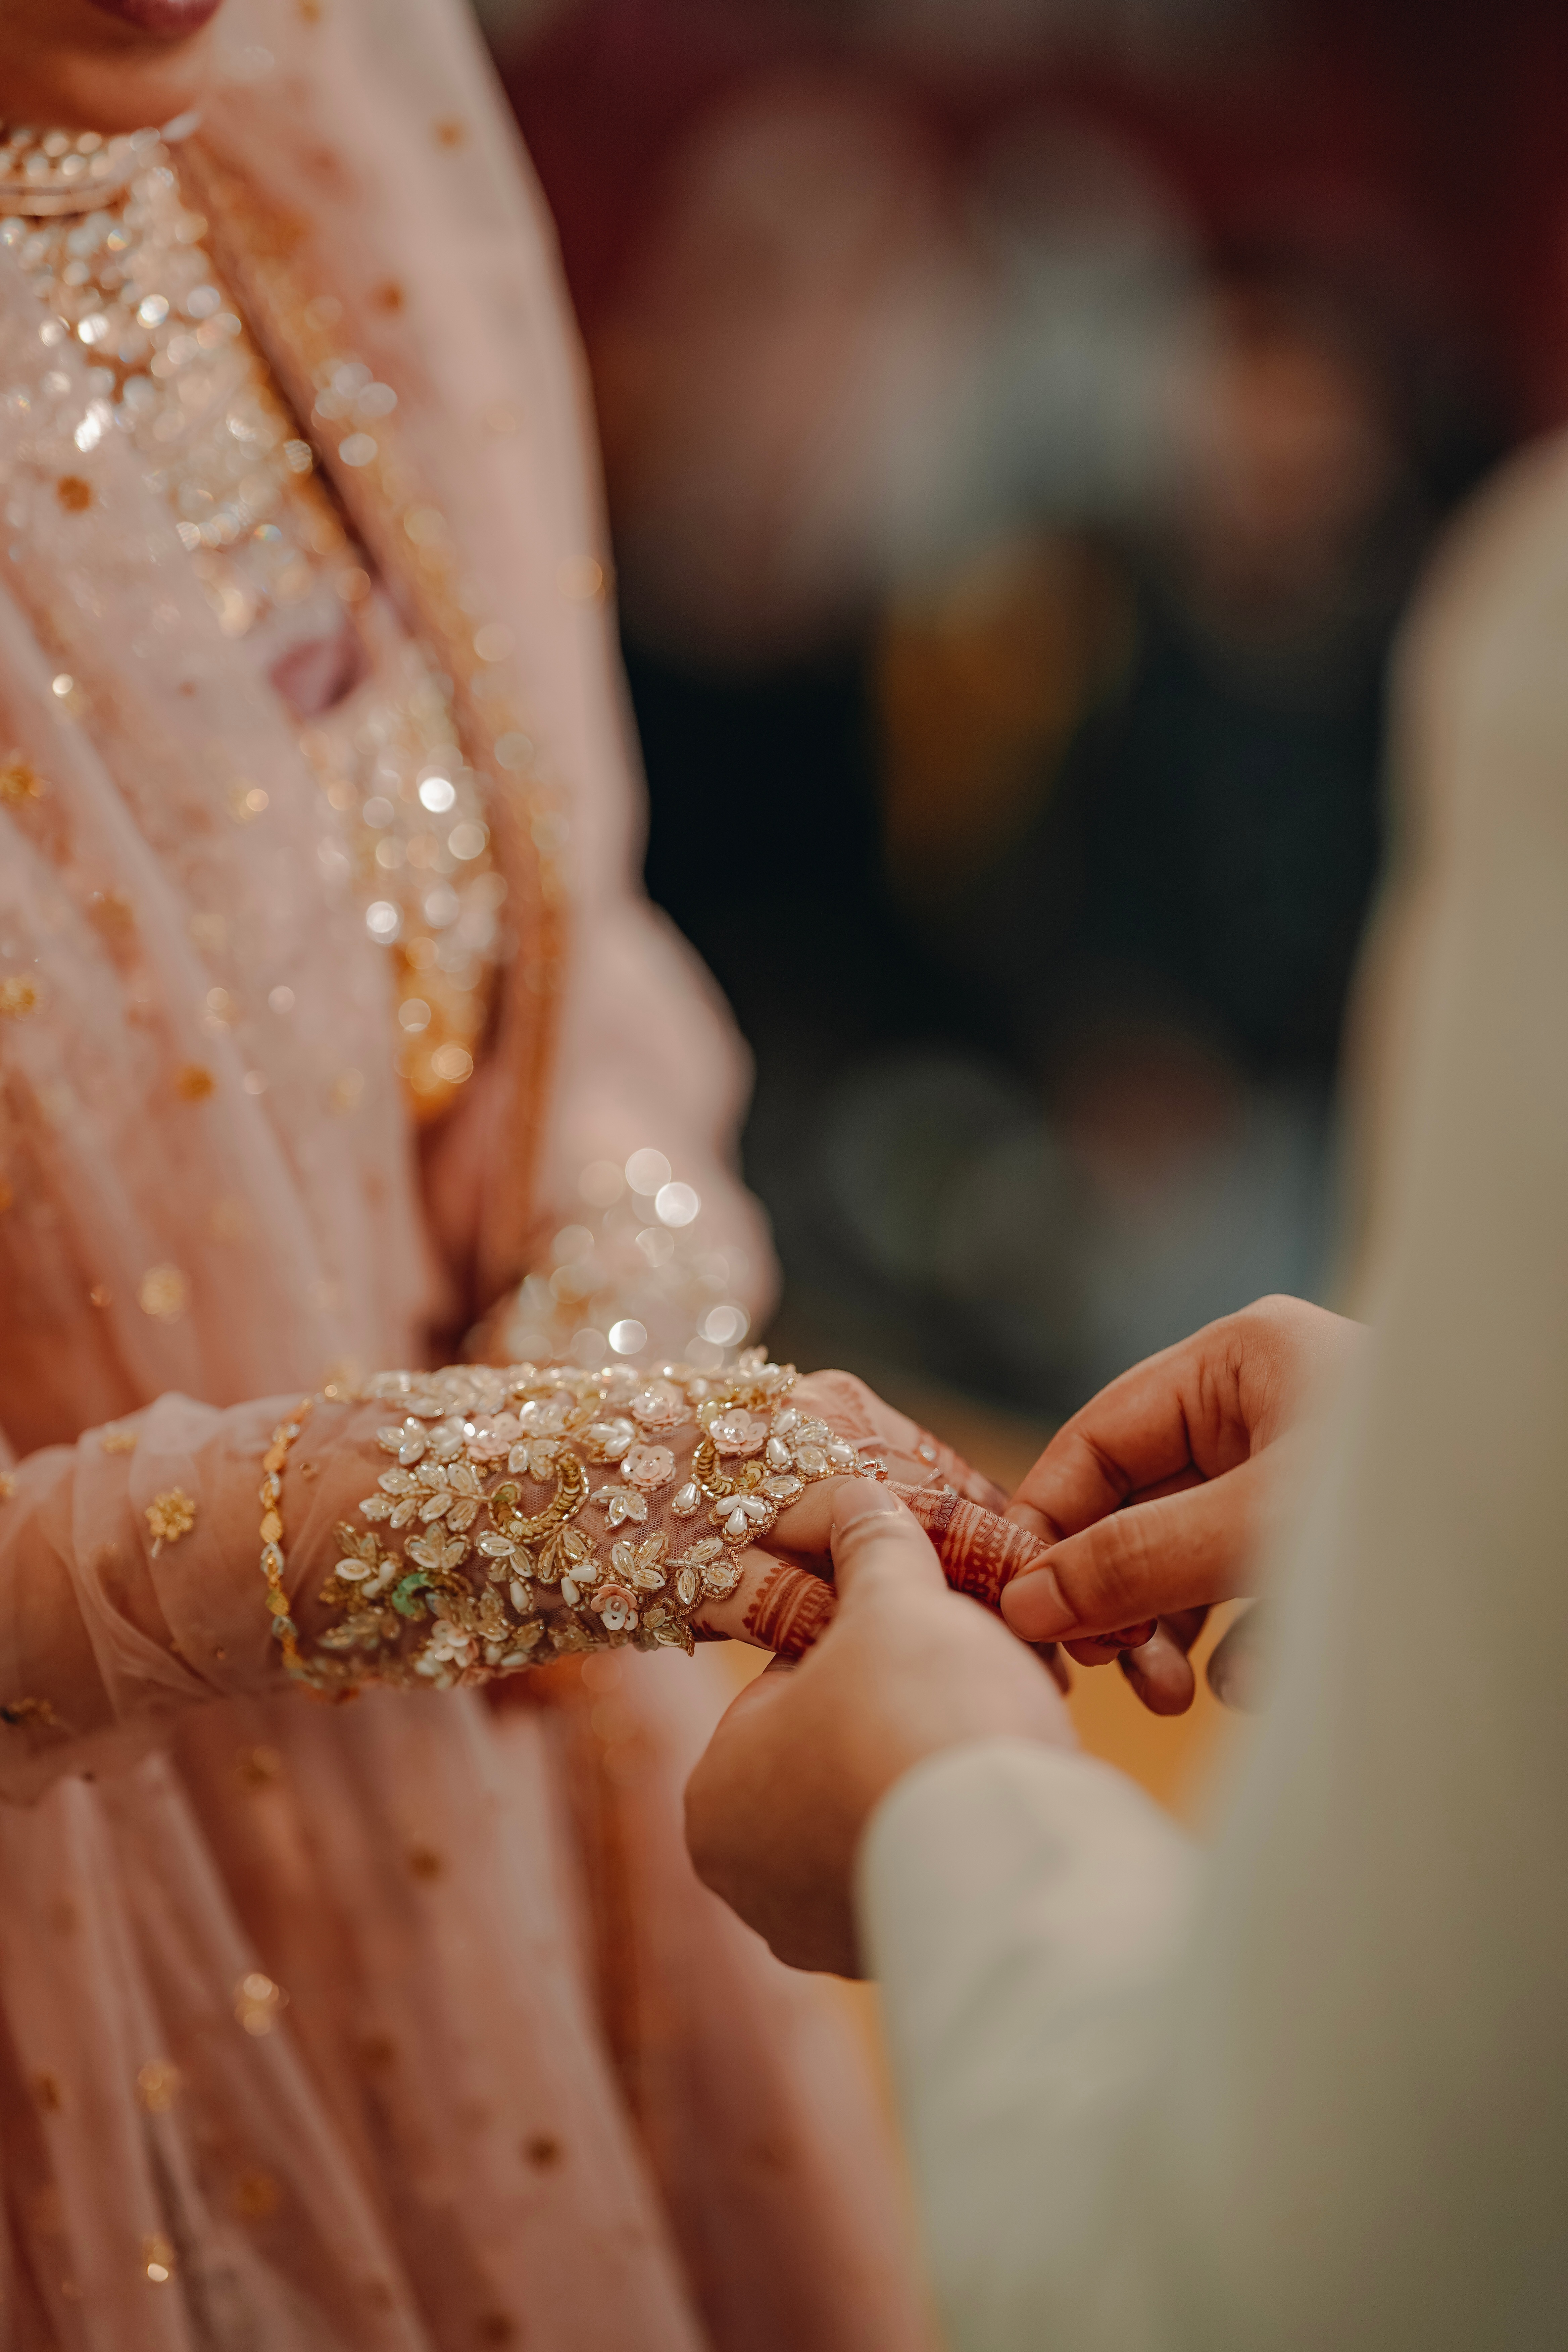 जल्दी शादी के लिए रंगपंचमी के दिन करें ये अचूक उपाय - India TV Hindi